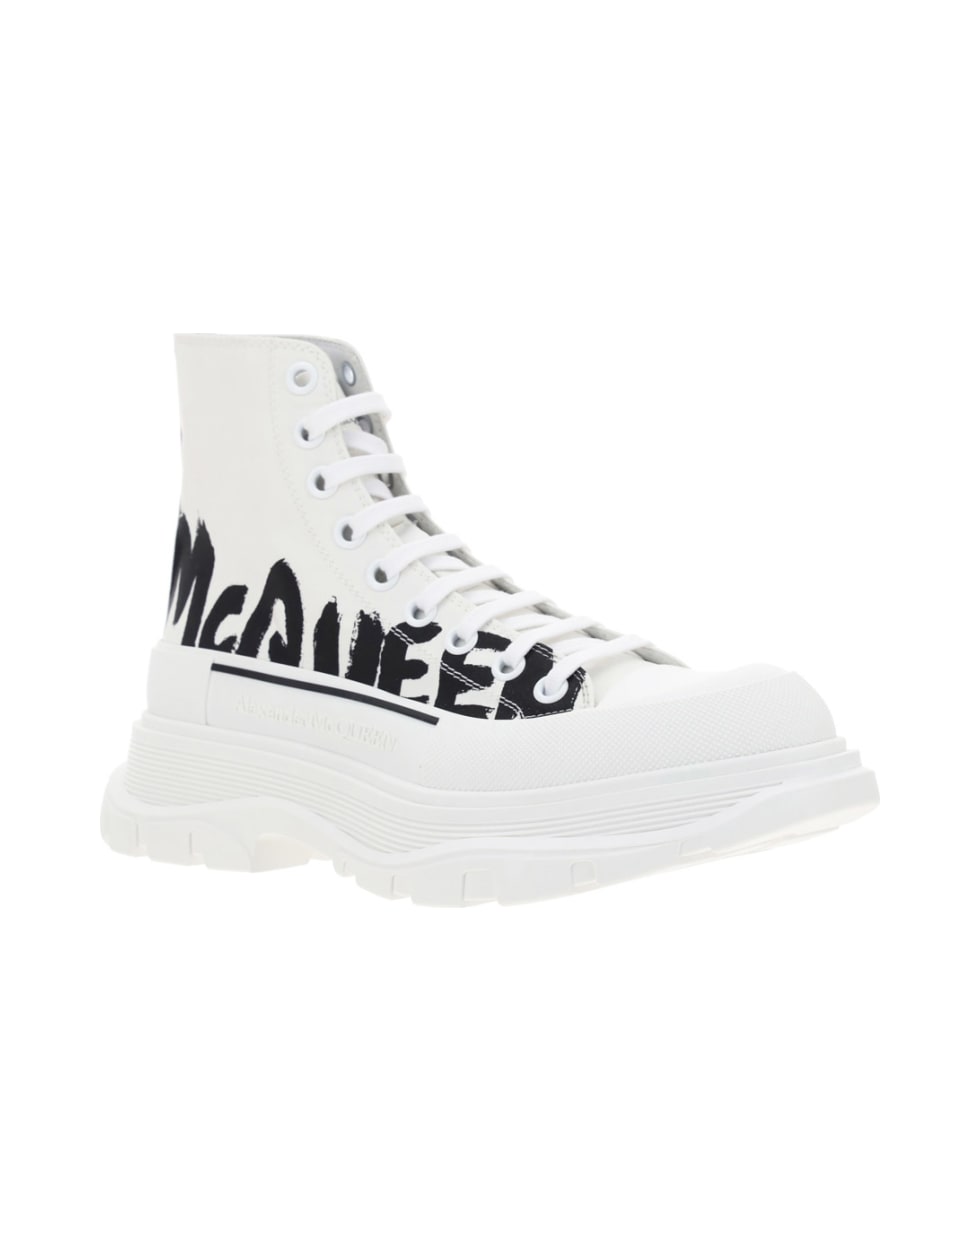 Alexander McQueen Alexander Mc Queen Sneakers - Wh/of.wh/blk/whi/blk